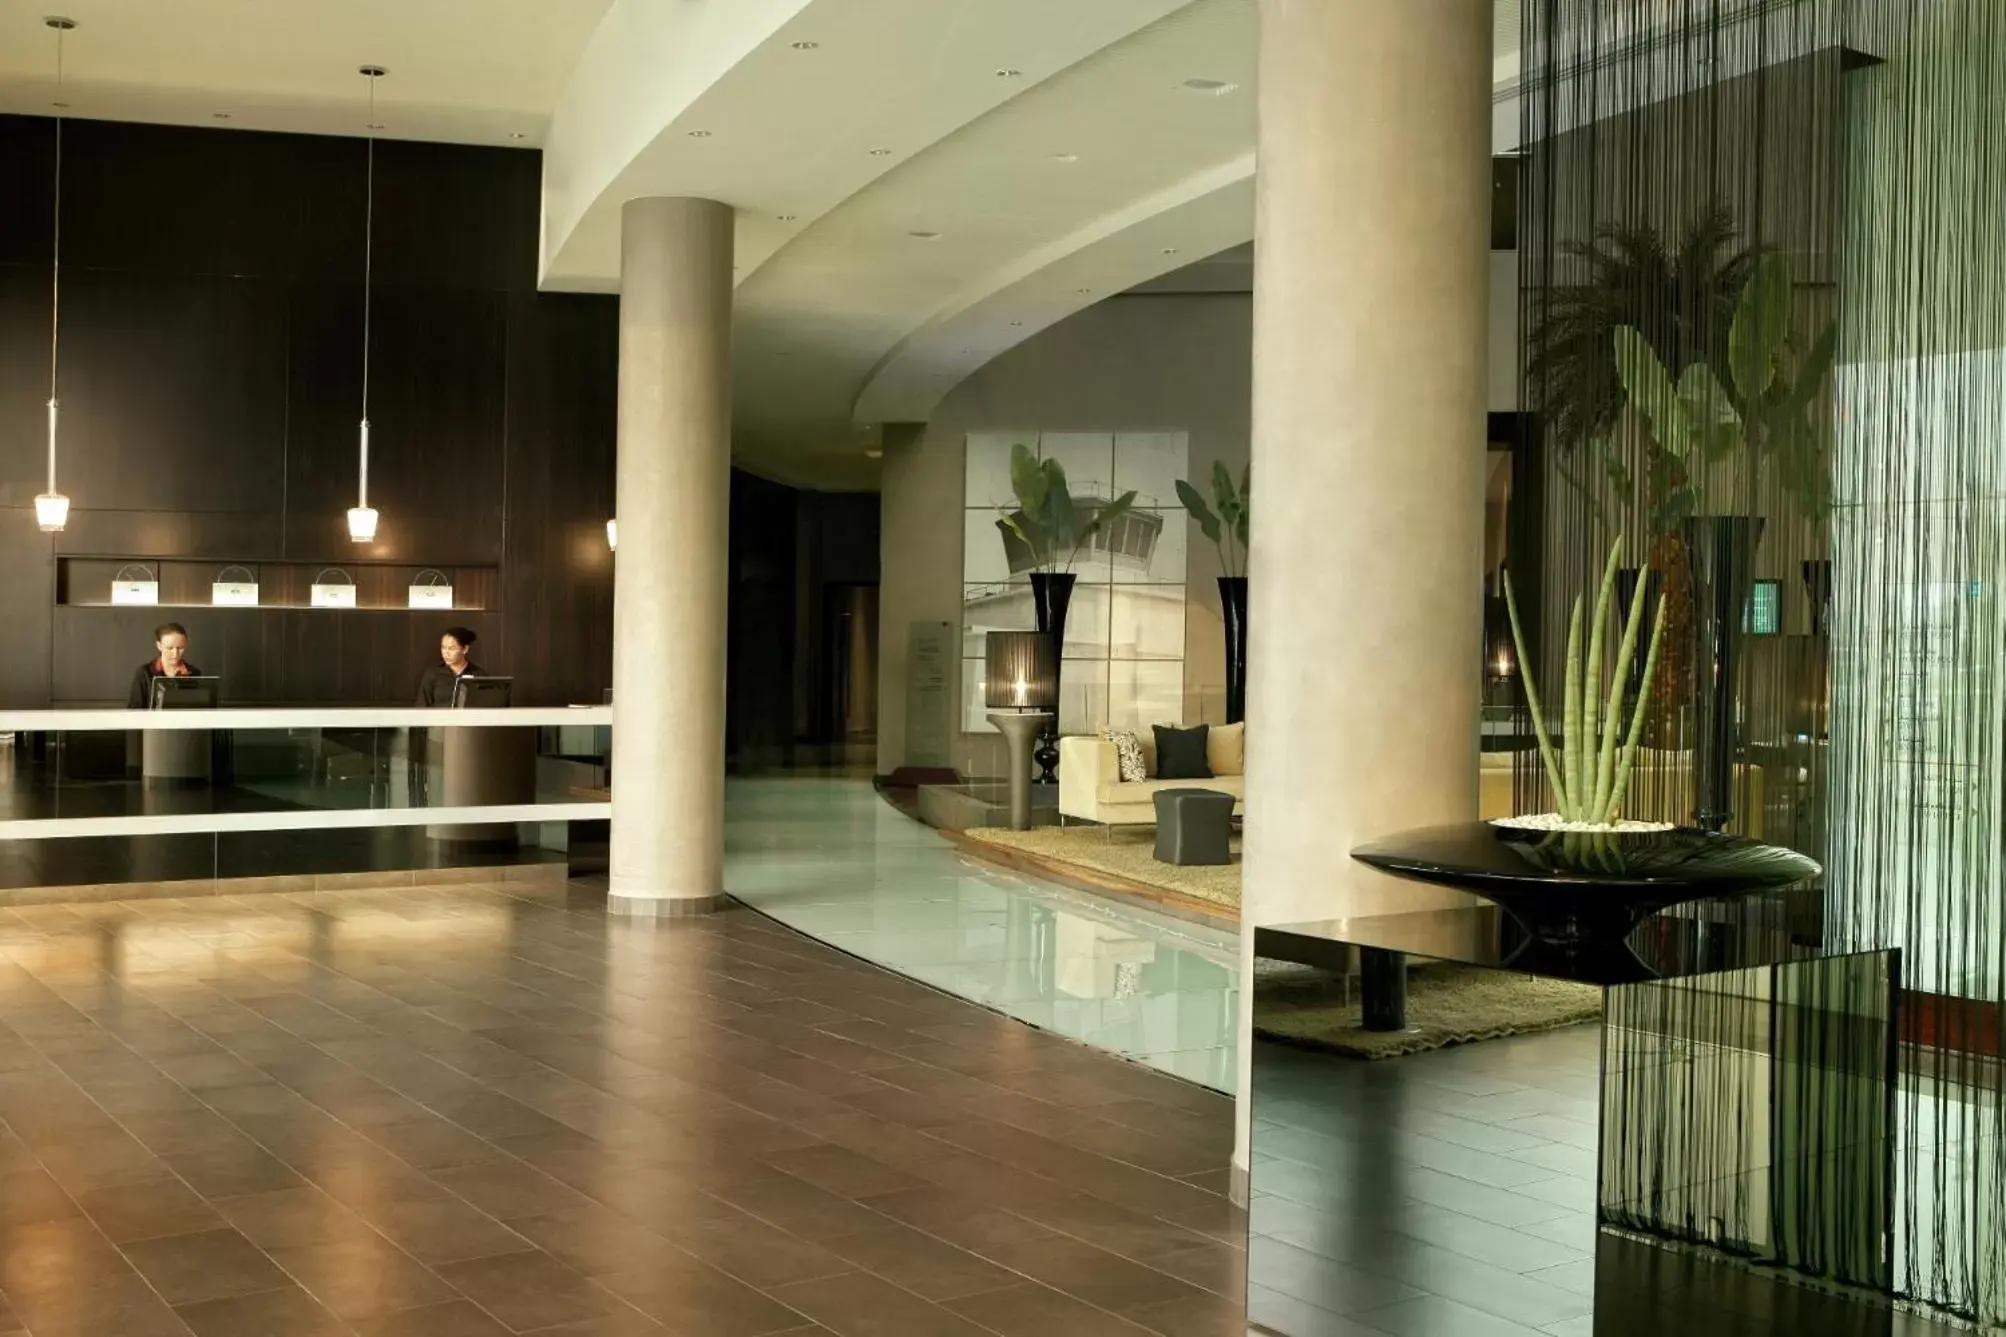 Lobby or reception, Lobby/Reception in Centro Sharjah - by Rotana